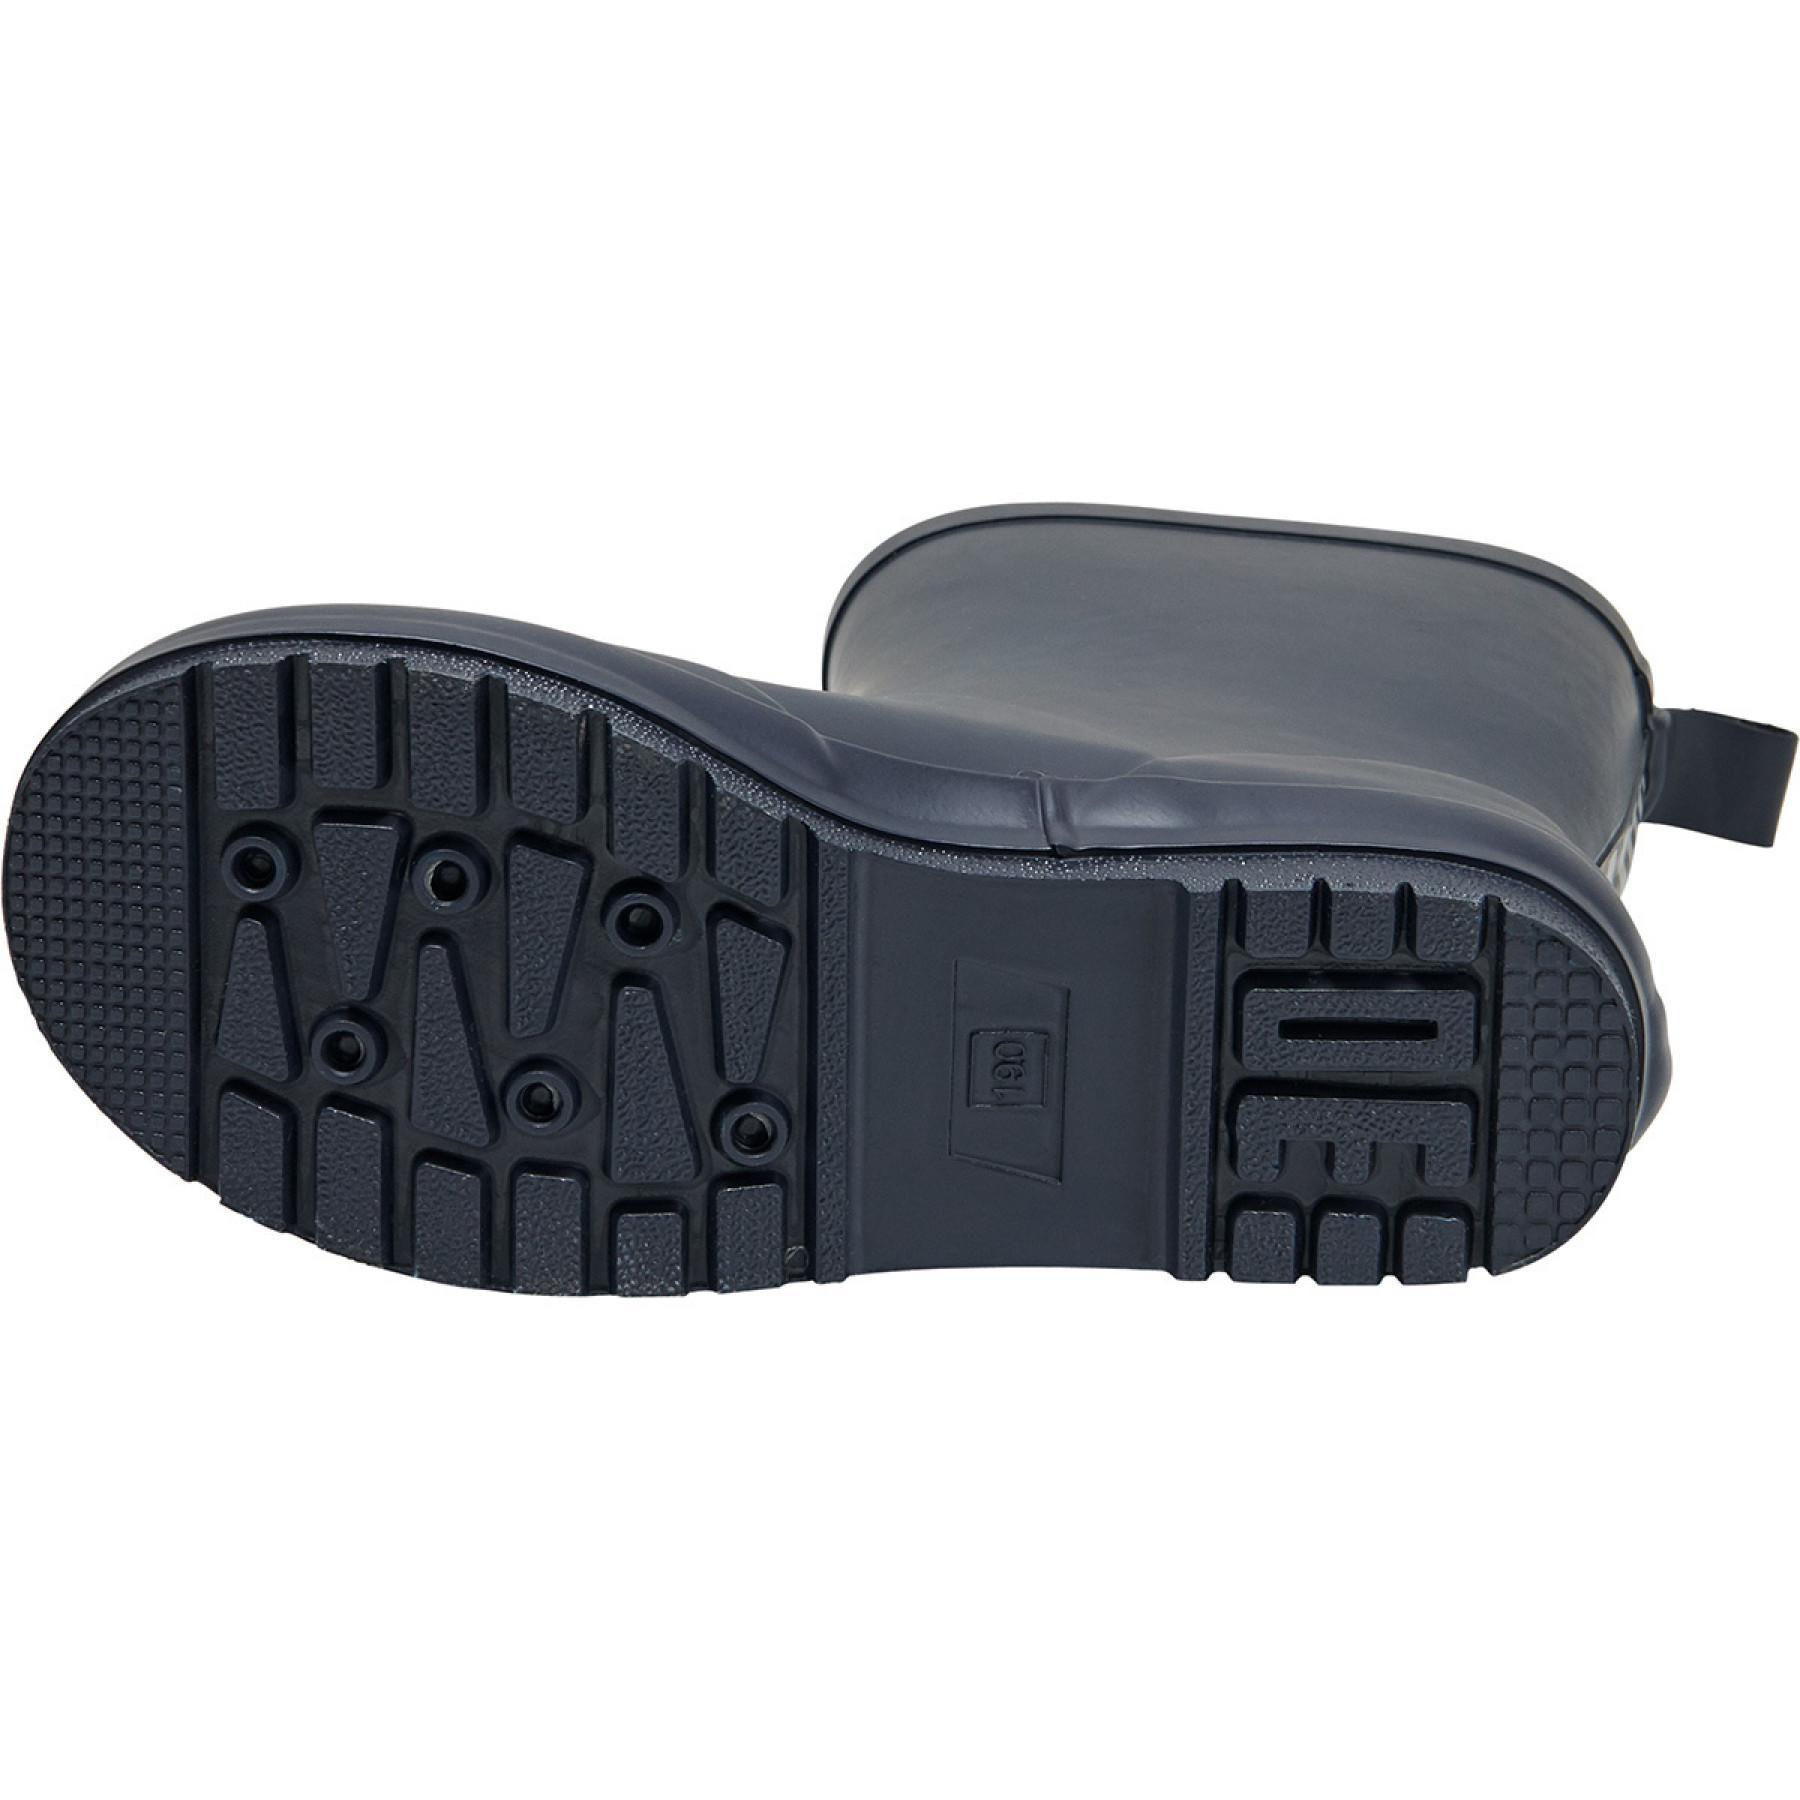 Children's sneakers Hummel rubber boot